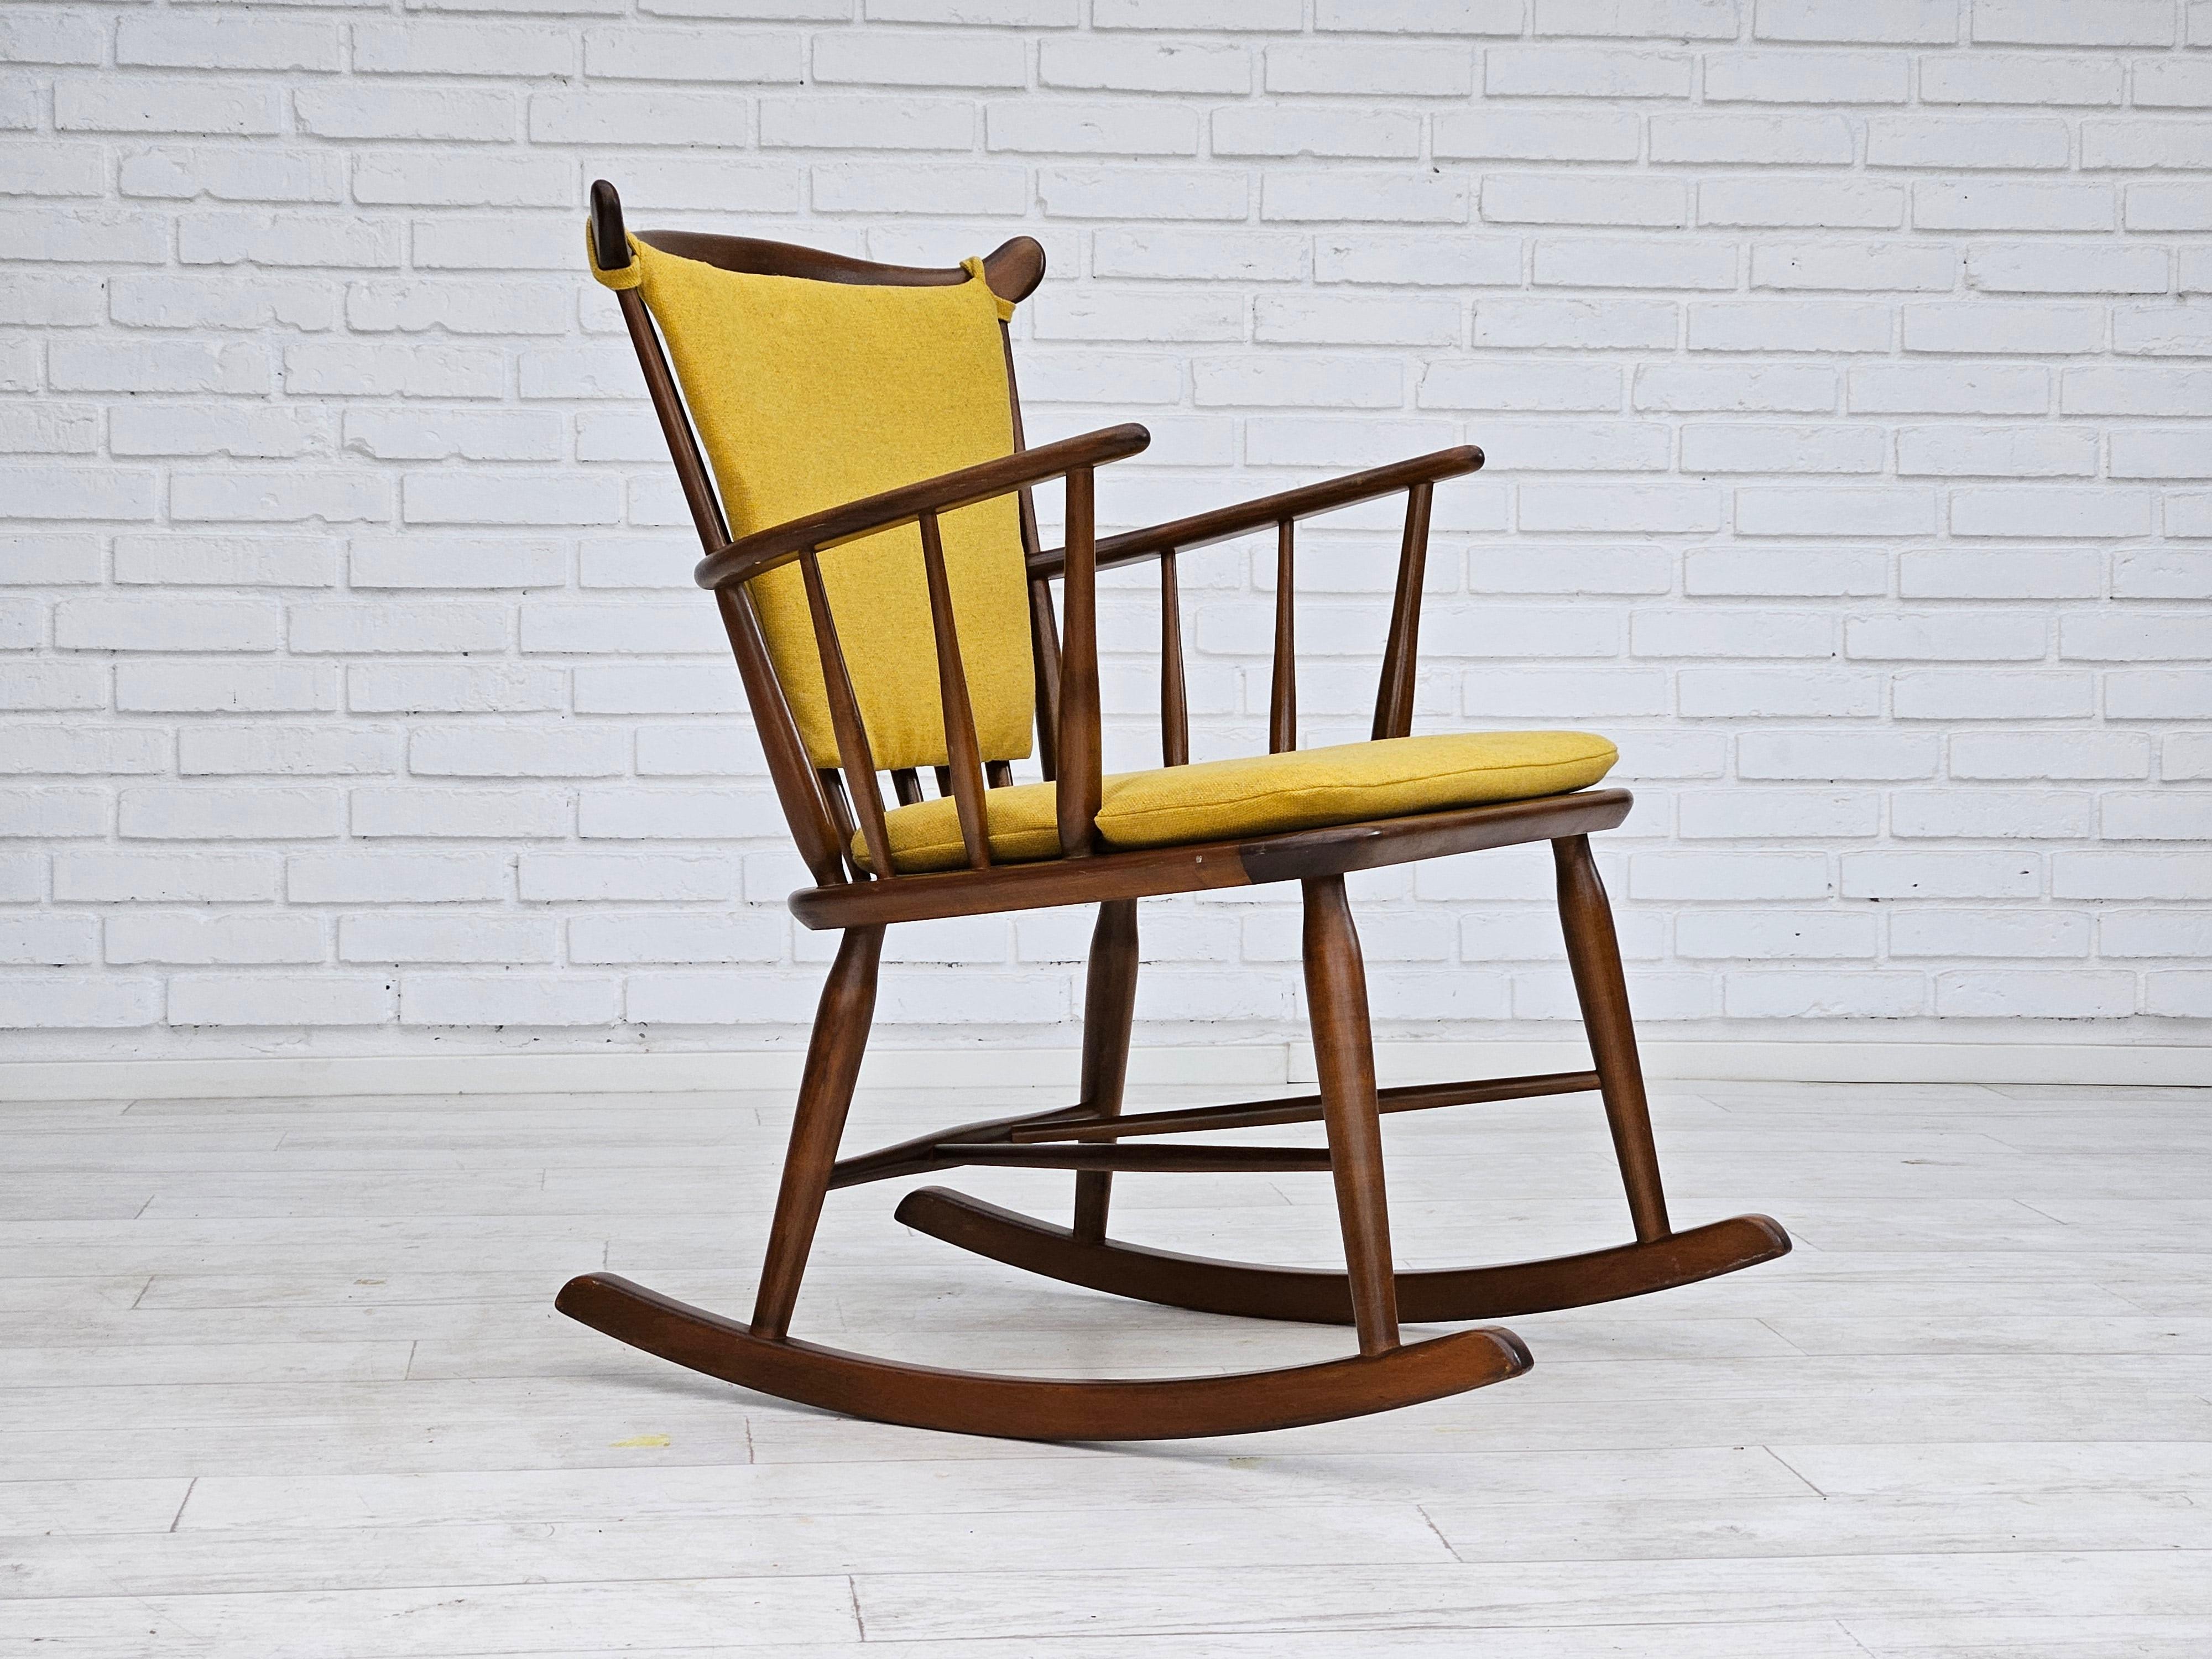 Années 1960-70, design danois par Farstrup Stolefabrik. Chaise à bascule retapissée. Laine d'ameublement jaune, bois de hêtre renouvelé. Rembourré par un artisan. Fabriqué par le fabricant de meubles danois Farstrup Stolefabrik vers 1965.